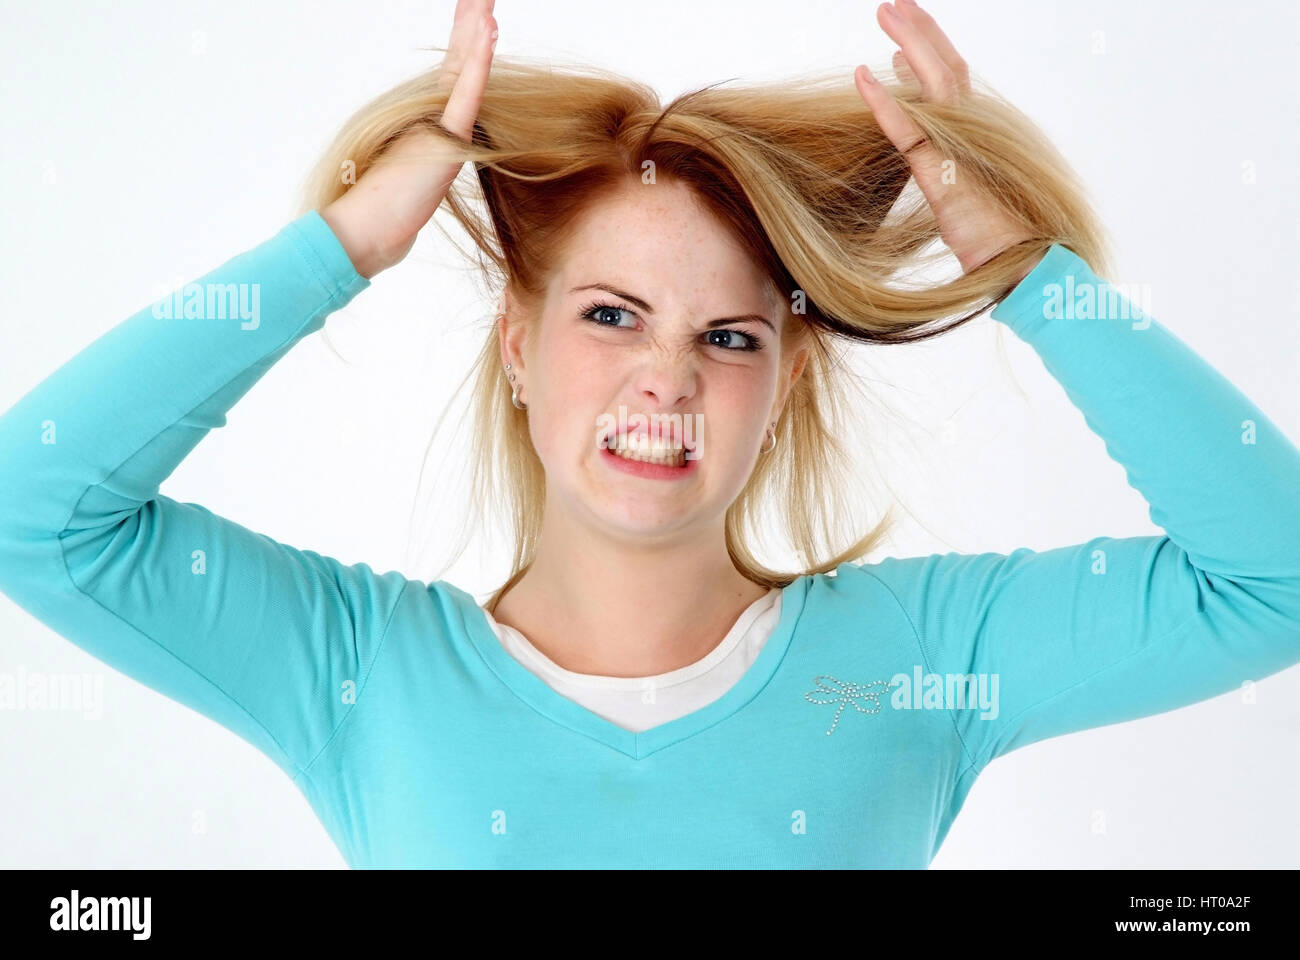 Zornige Frau rauft sich die Haare - angry woman Stock Photo